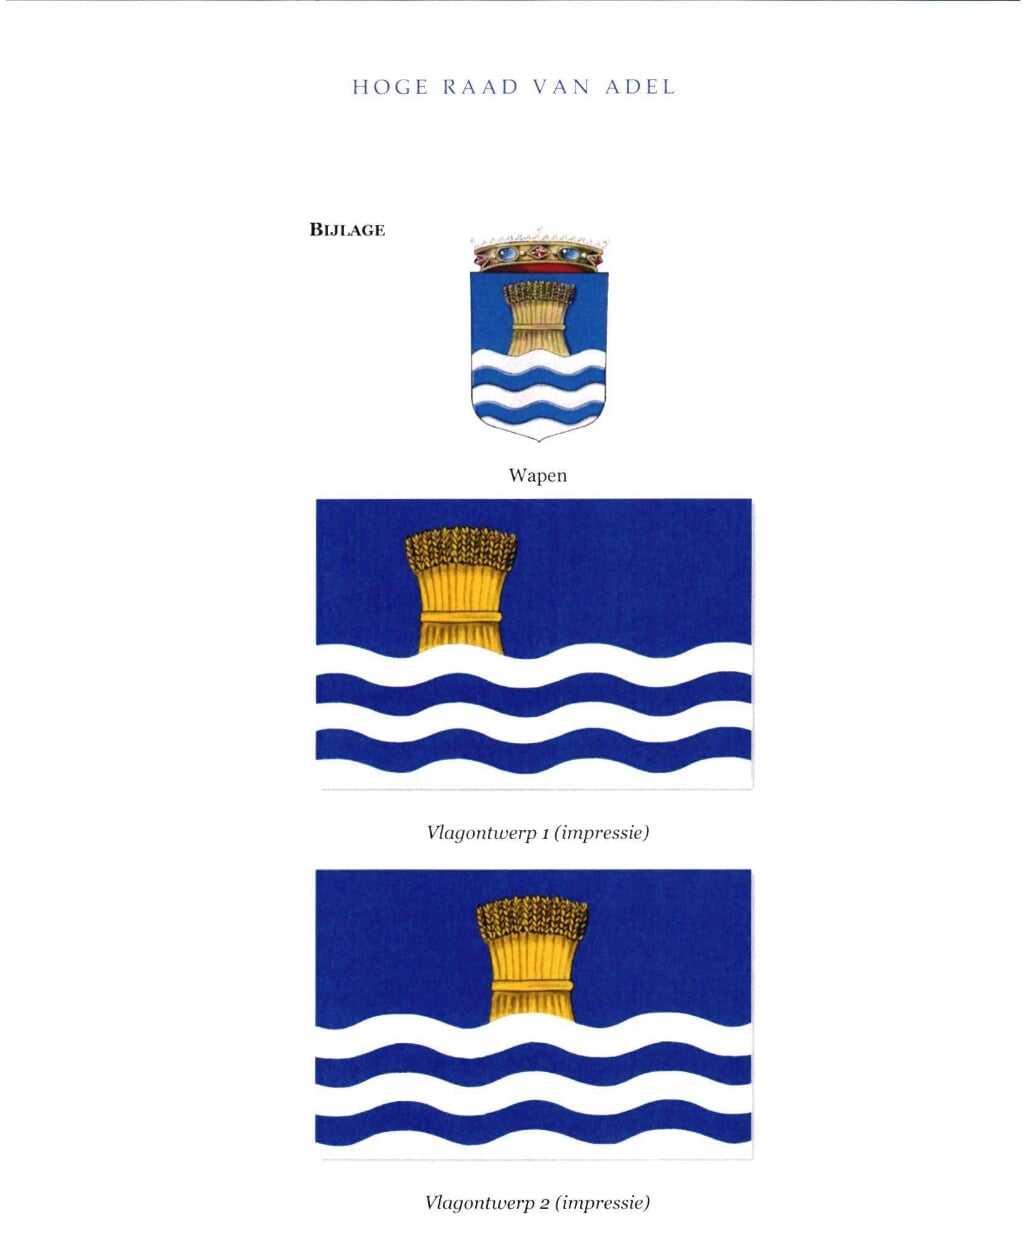 De door de Hoge Raad van Adel voorgestelde vlag met erboven het gemeentewapen.